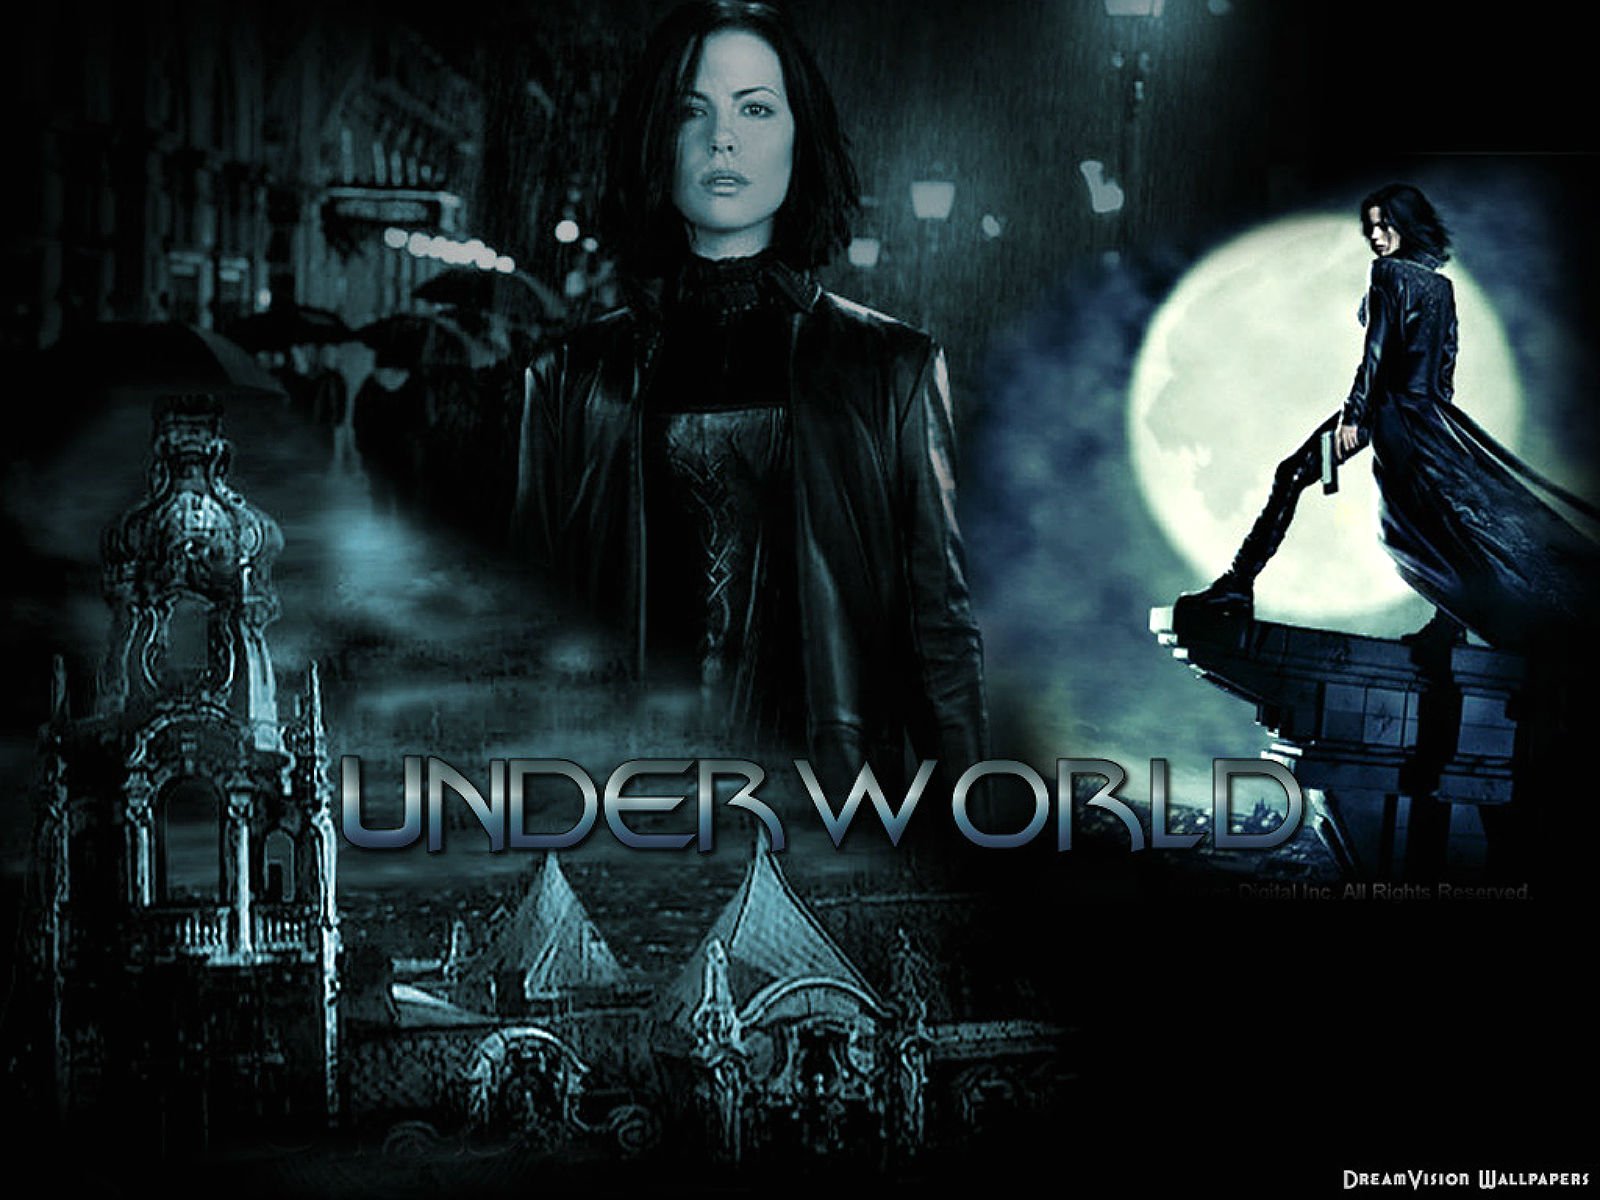 movie underworld full movie online free 123ovies